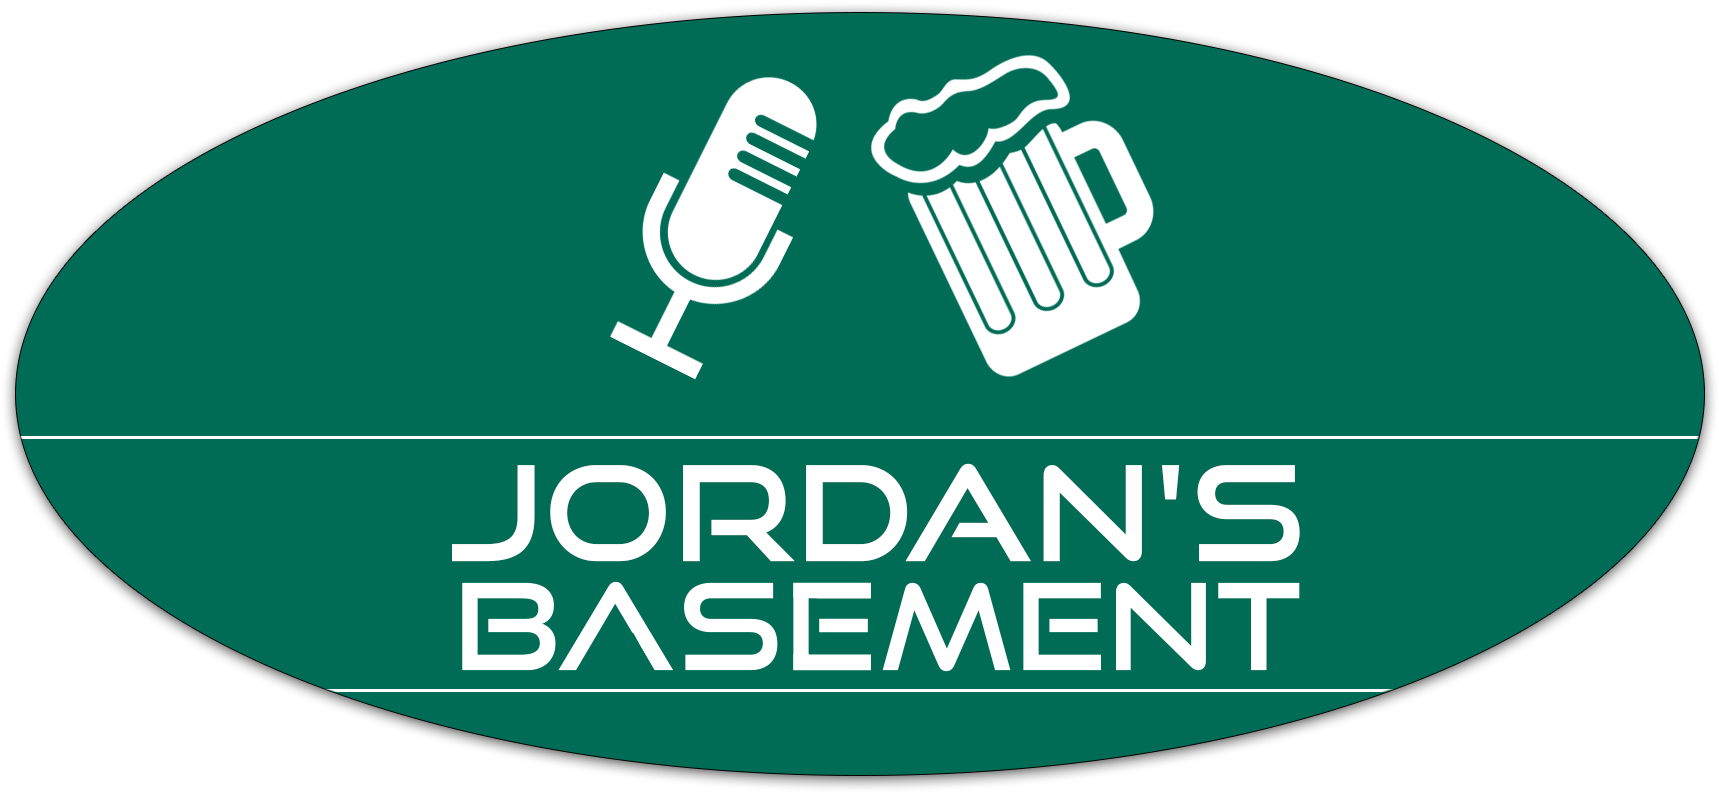 Jordan's Basement (1892x1462), Png Download